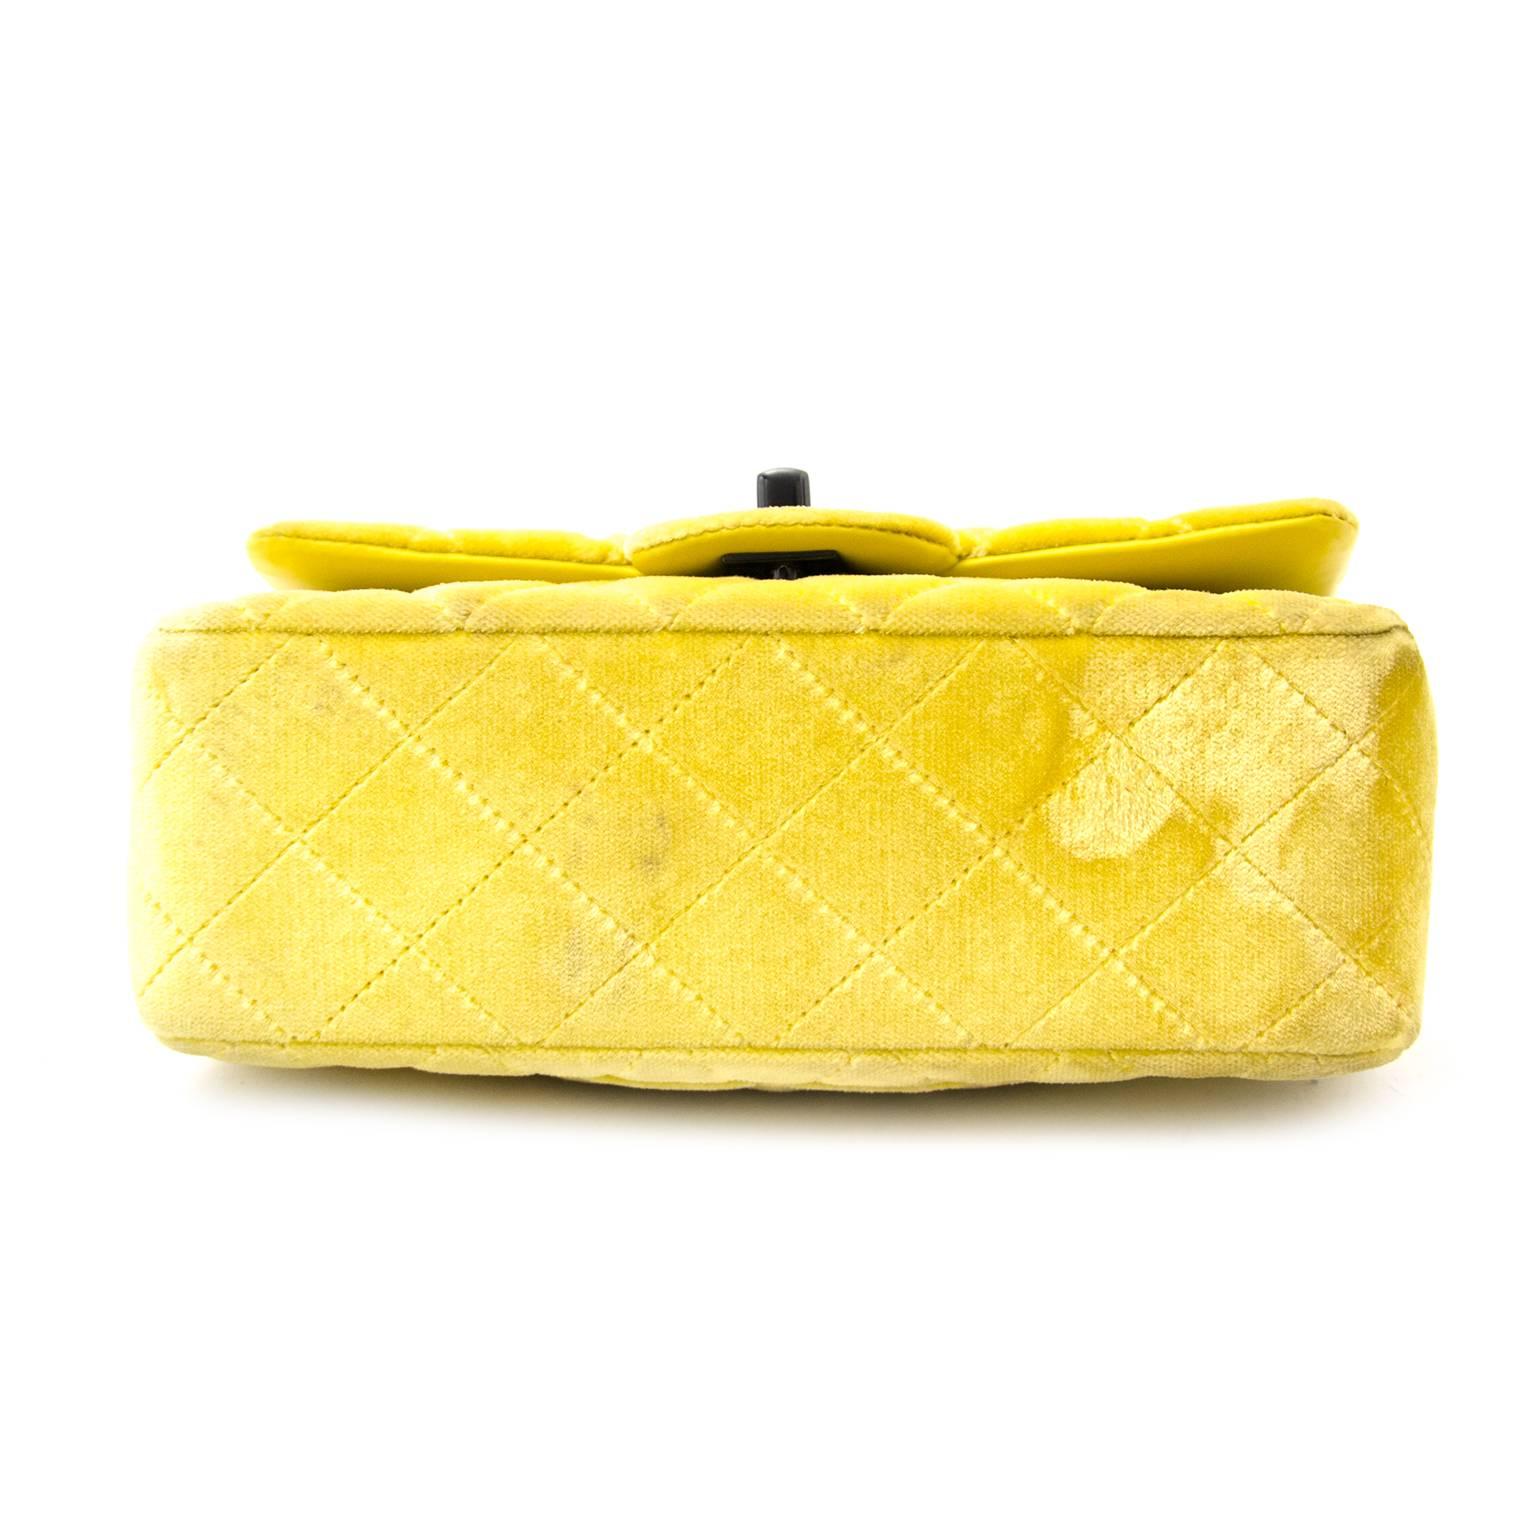 yellow velvet bag